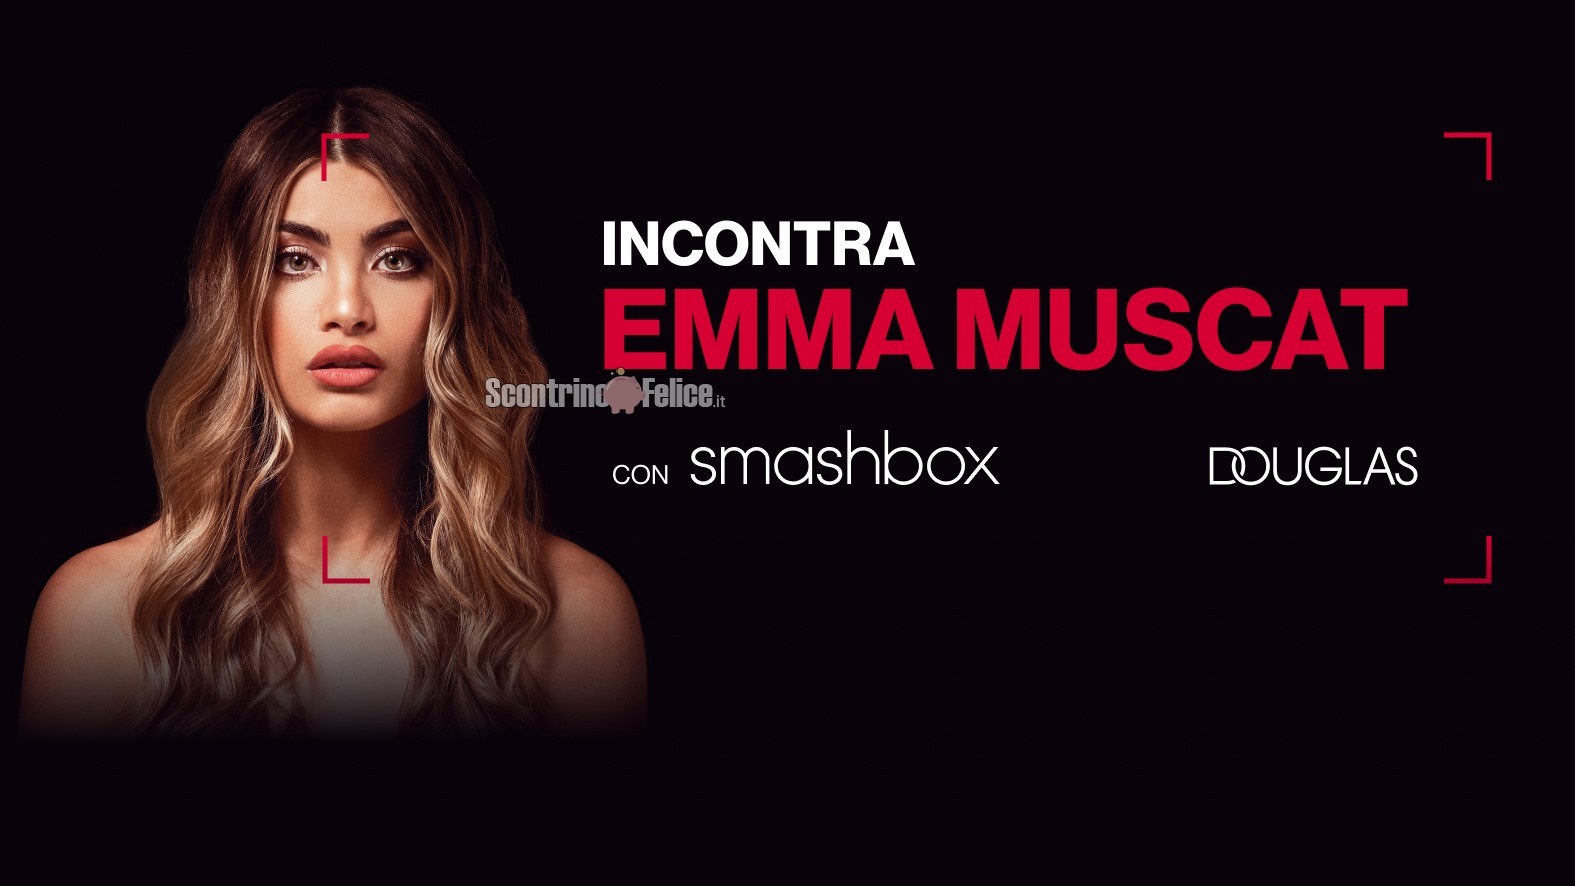 Concorso Smashbox da Douglas: incontra Emma Muscat e vinci 2 goodie bag